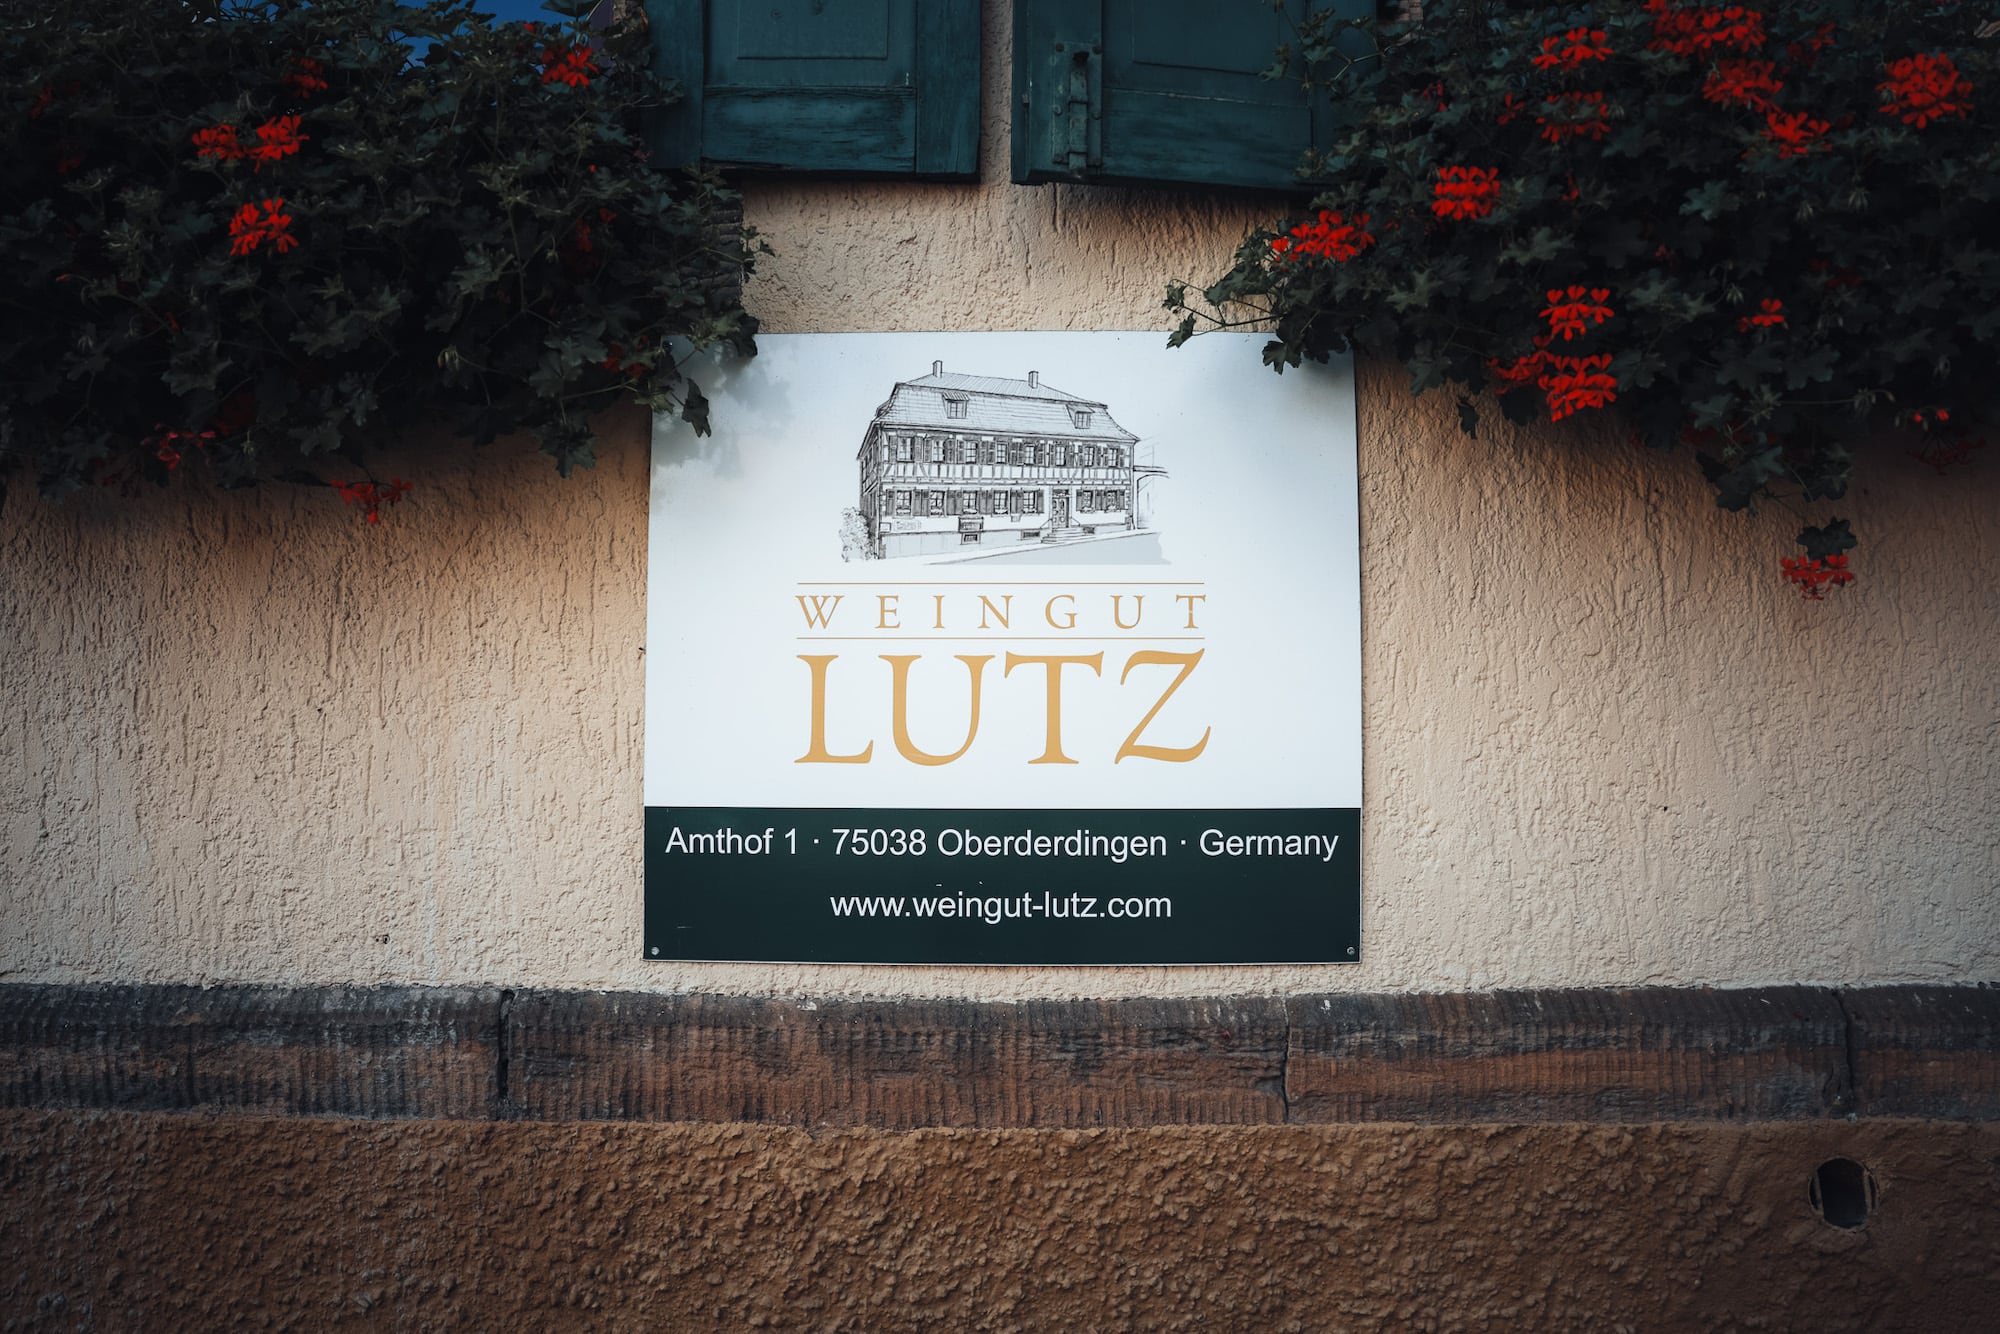 Weingut Lutz Baden-Württemberg